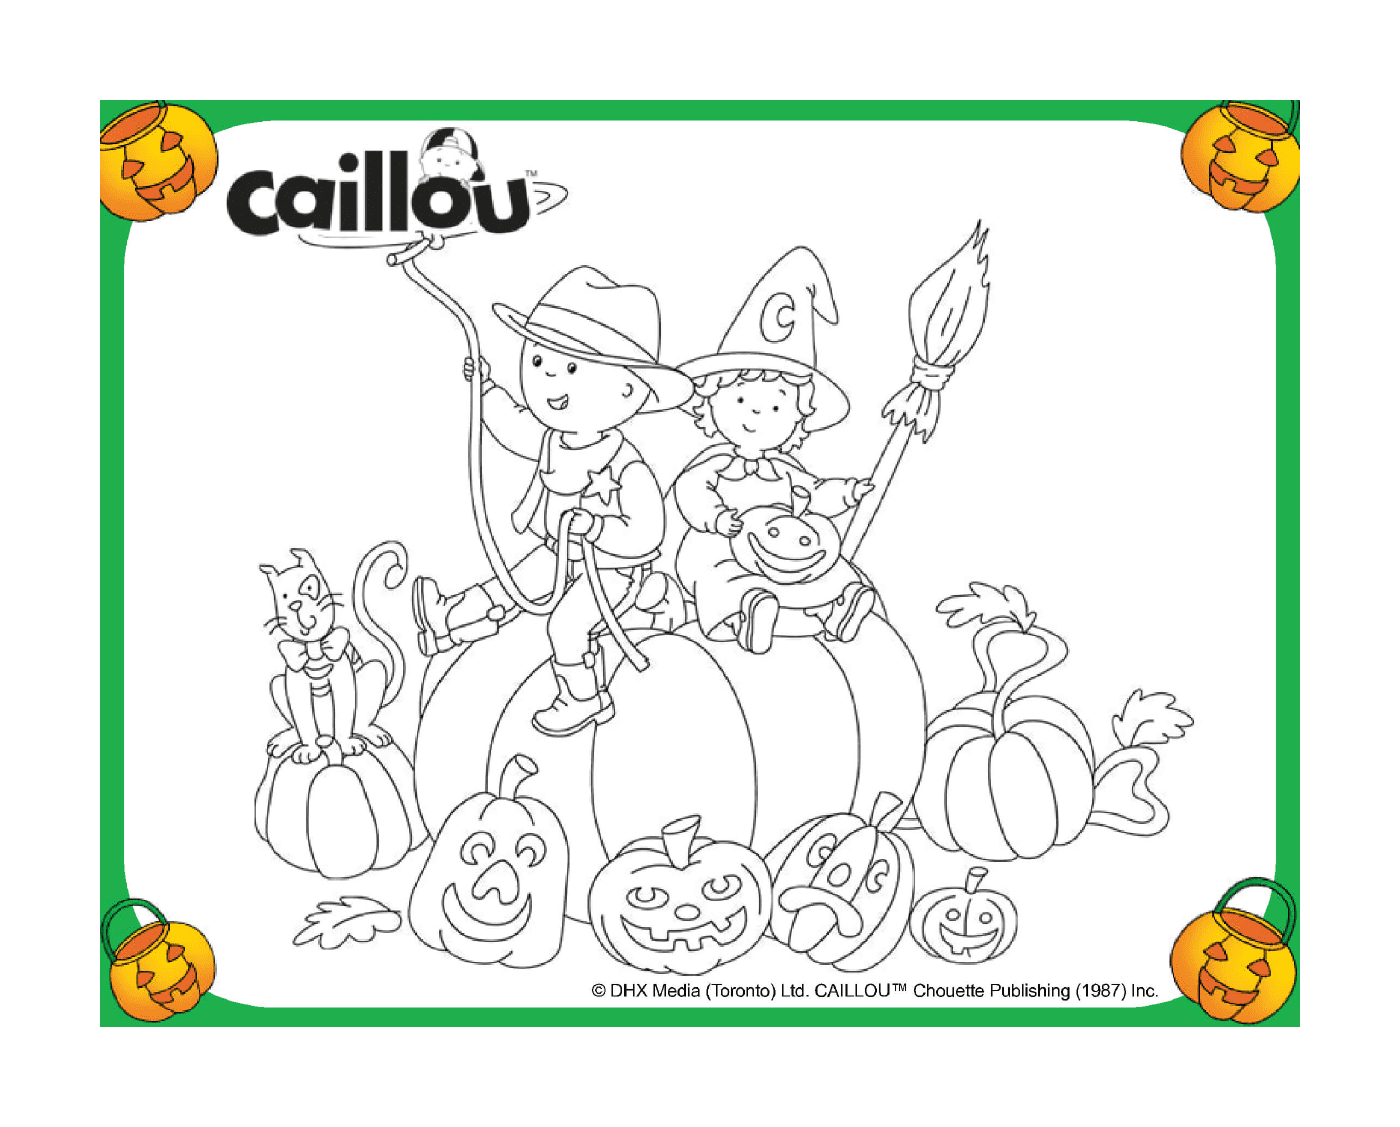  Caillou y Chiffon celebran Halloween en una calabaza 